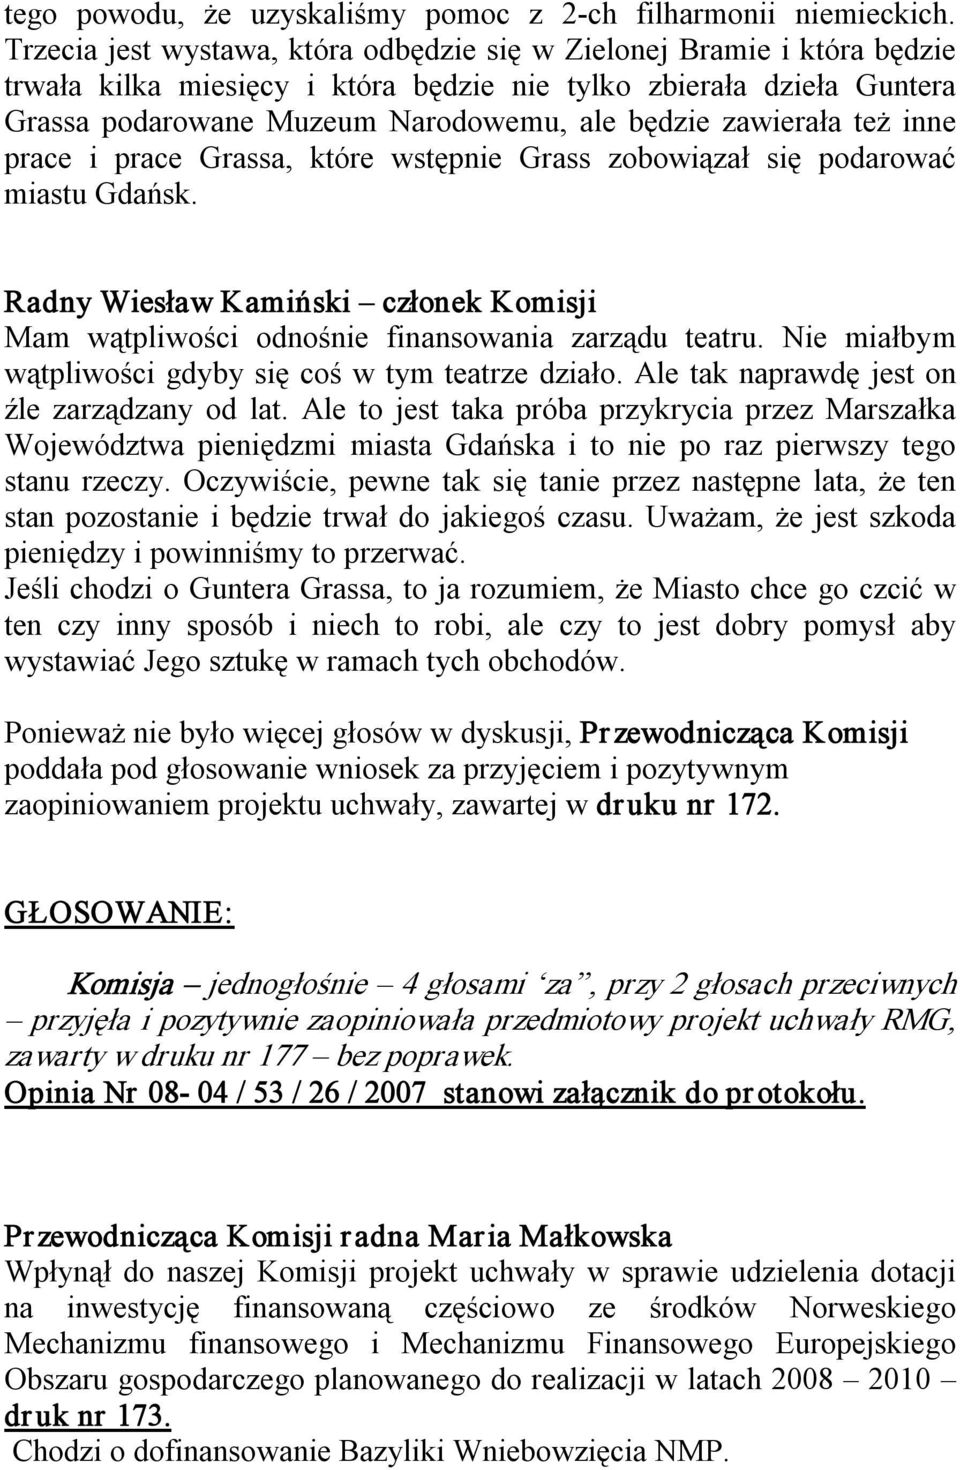 zawierała też inne prace i prace Grassa, które wstępnie Grass zobowiązał się podarować miastu Gdańsk. Radny Wiesław Kamiński członek Komisji Mam wątpliwości odnośnie finansowania zarządu teatru.